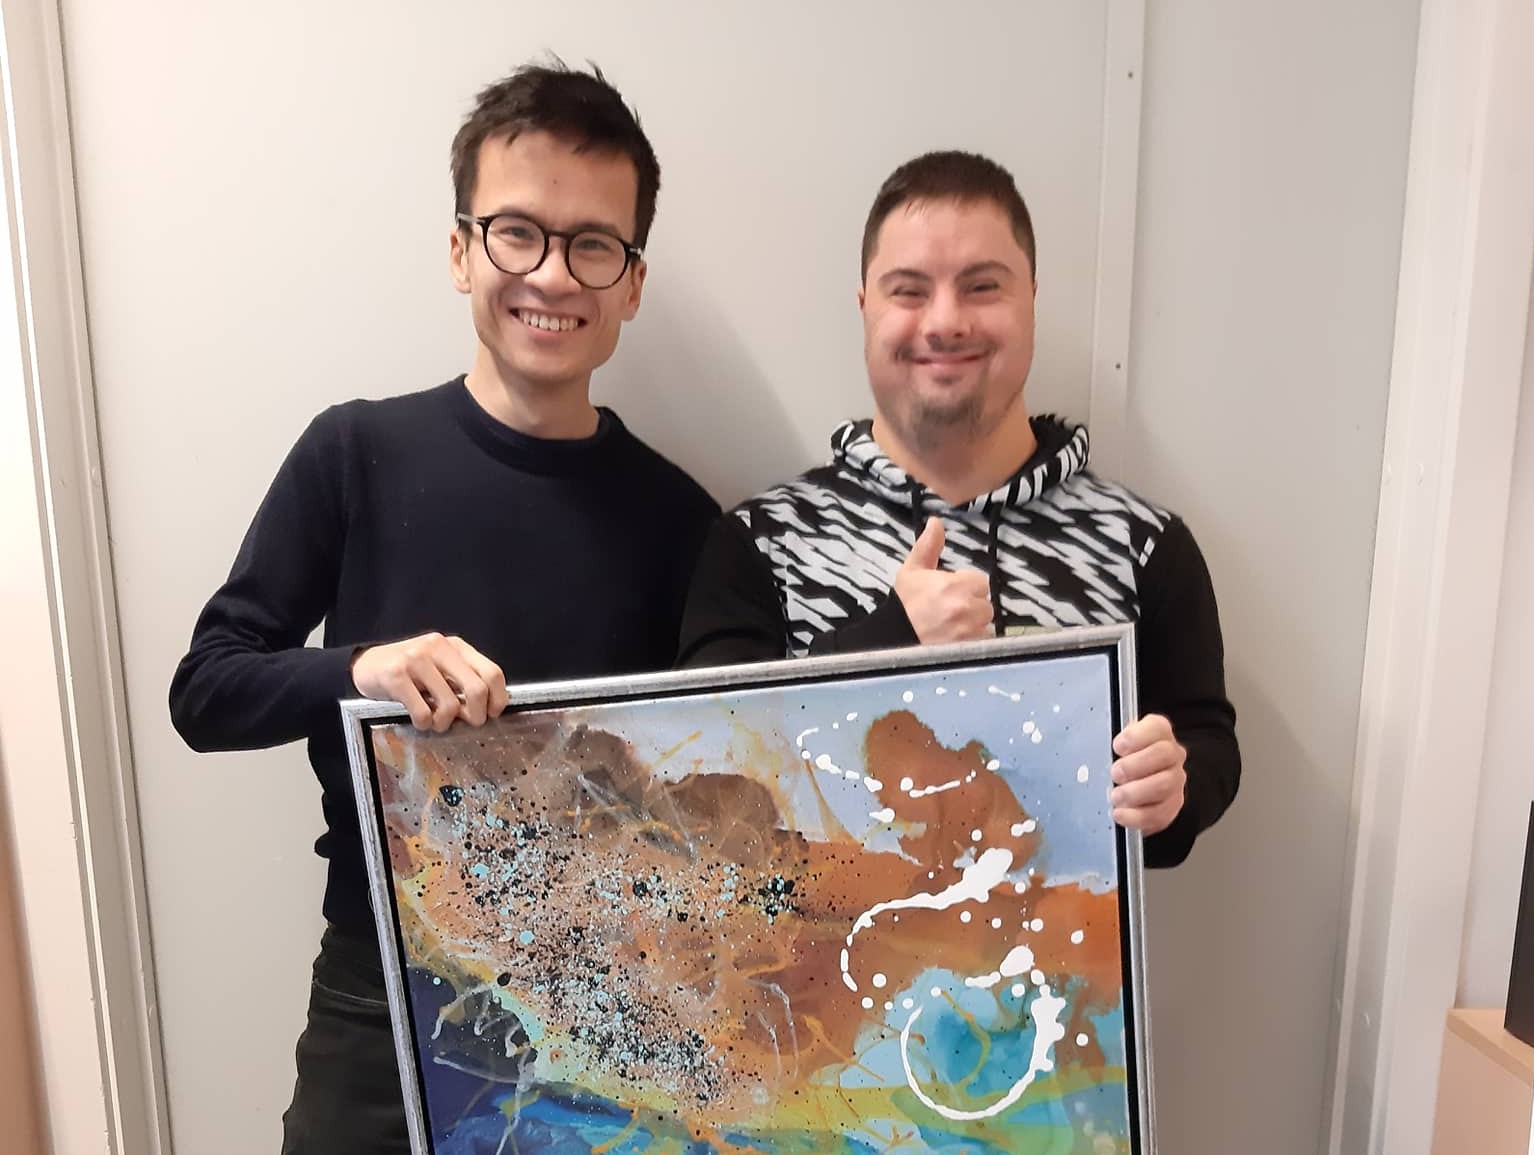 Christopher Trung står sammen med Haddi fra VASAC, som netop har solgt et fint maleri til Christopher.